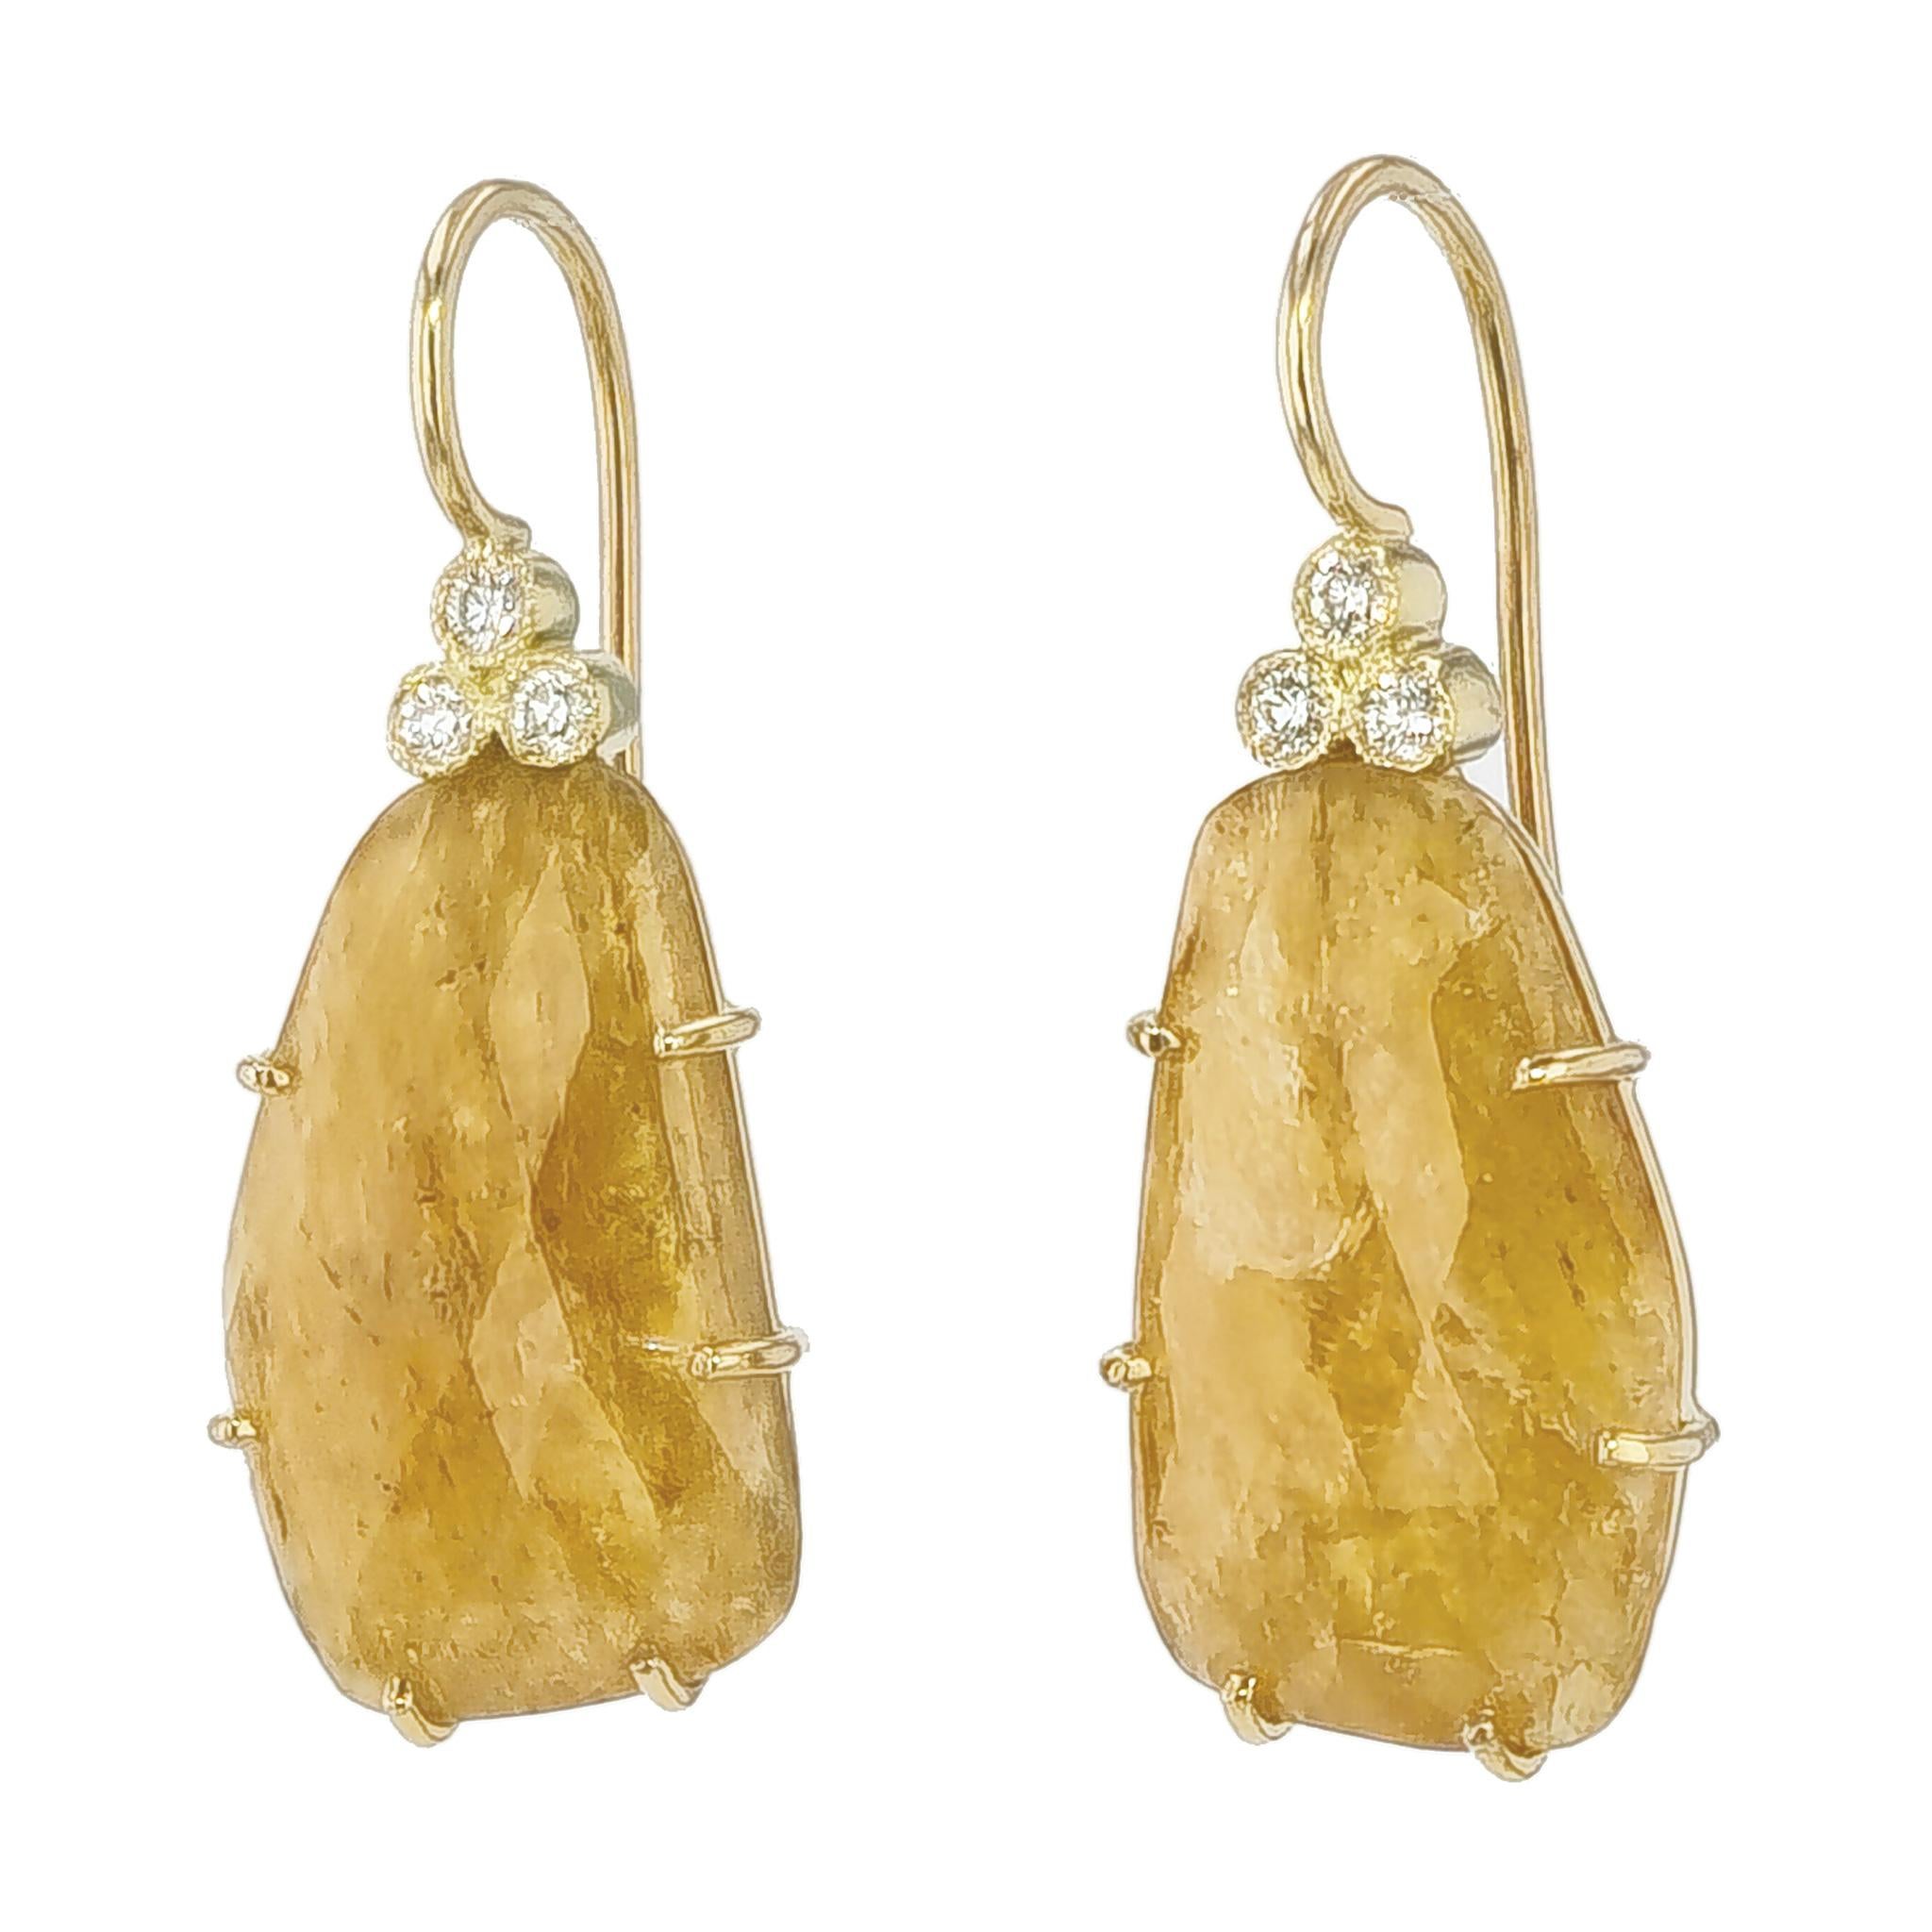 Ces étonnantes boucles d'oreilles pendantes en or jaune sont fabriquées à la main à partir de la Collection H&H. 

Chaque paire contient deux saphirs jaunes naturels d'un poids total de 13,93 carats, 6 diamants ronds de taille brillant d'une couleur